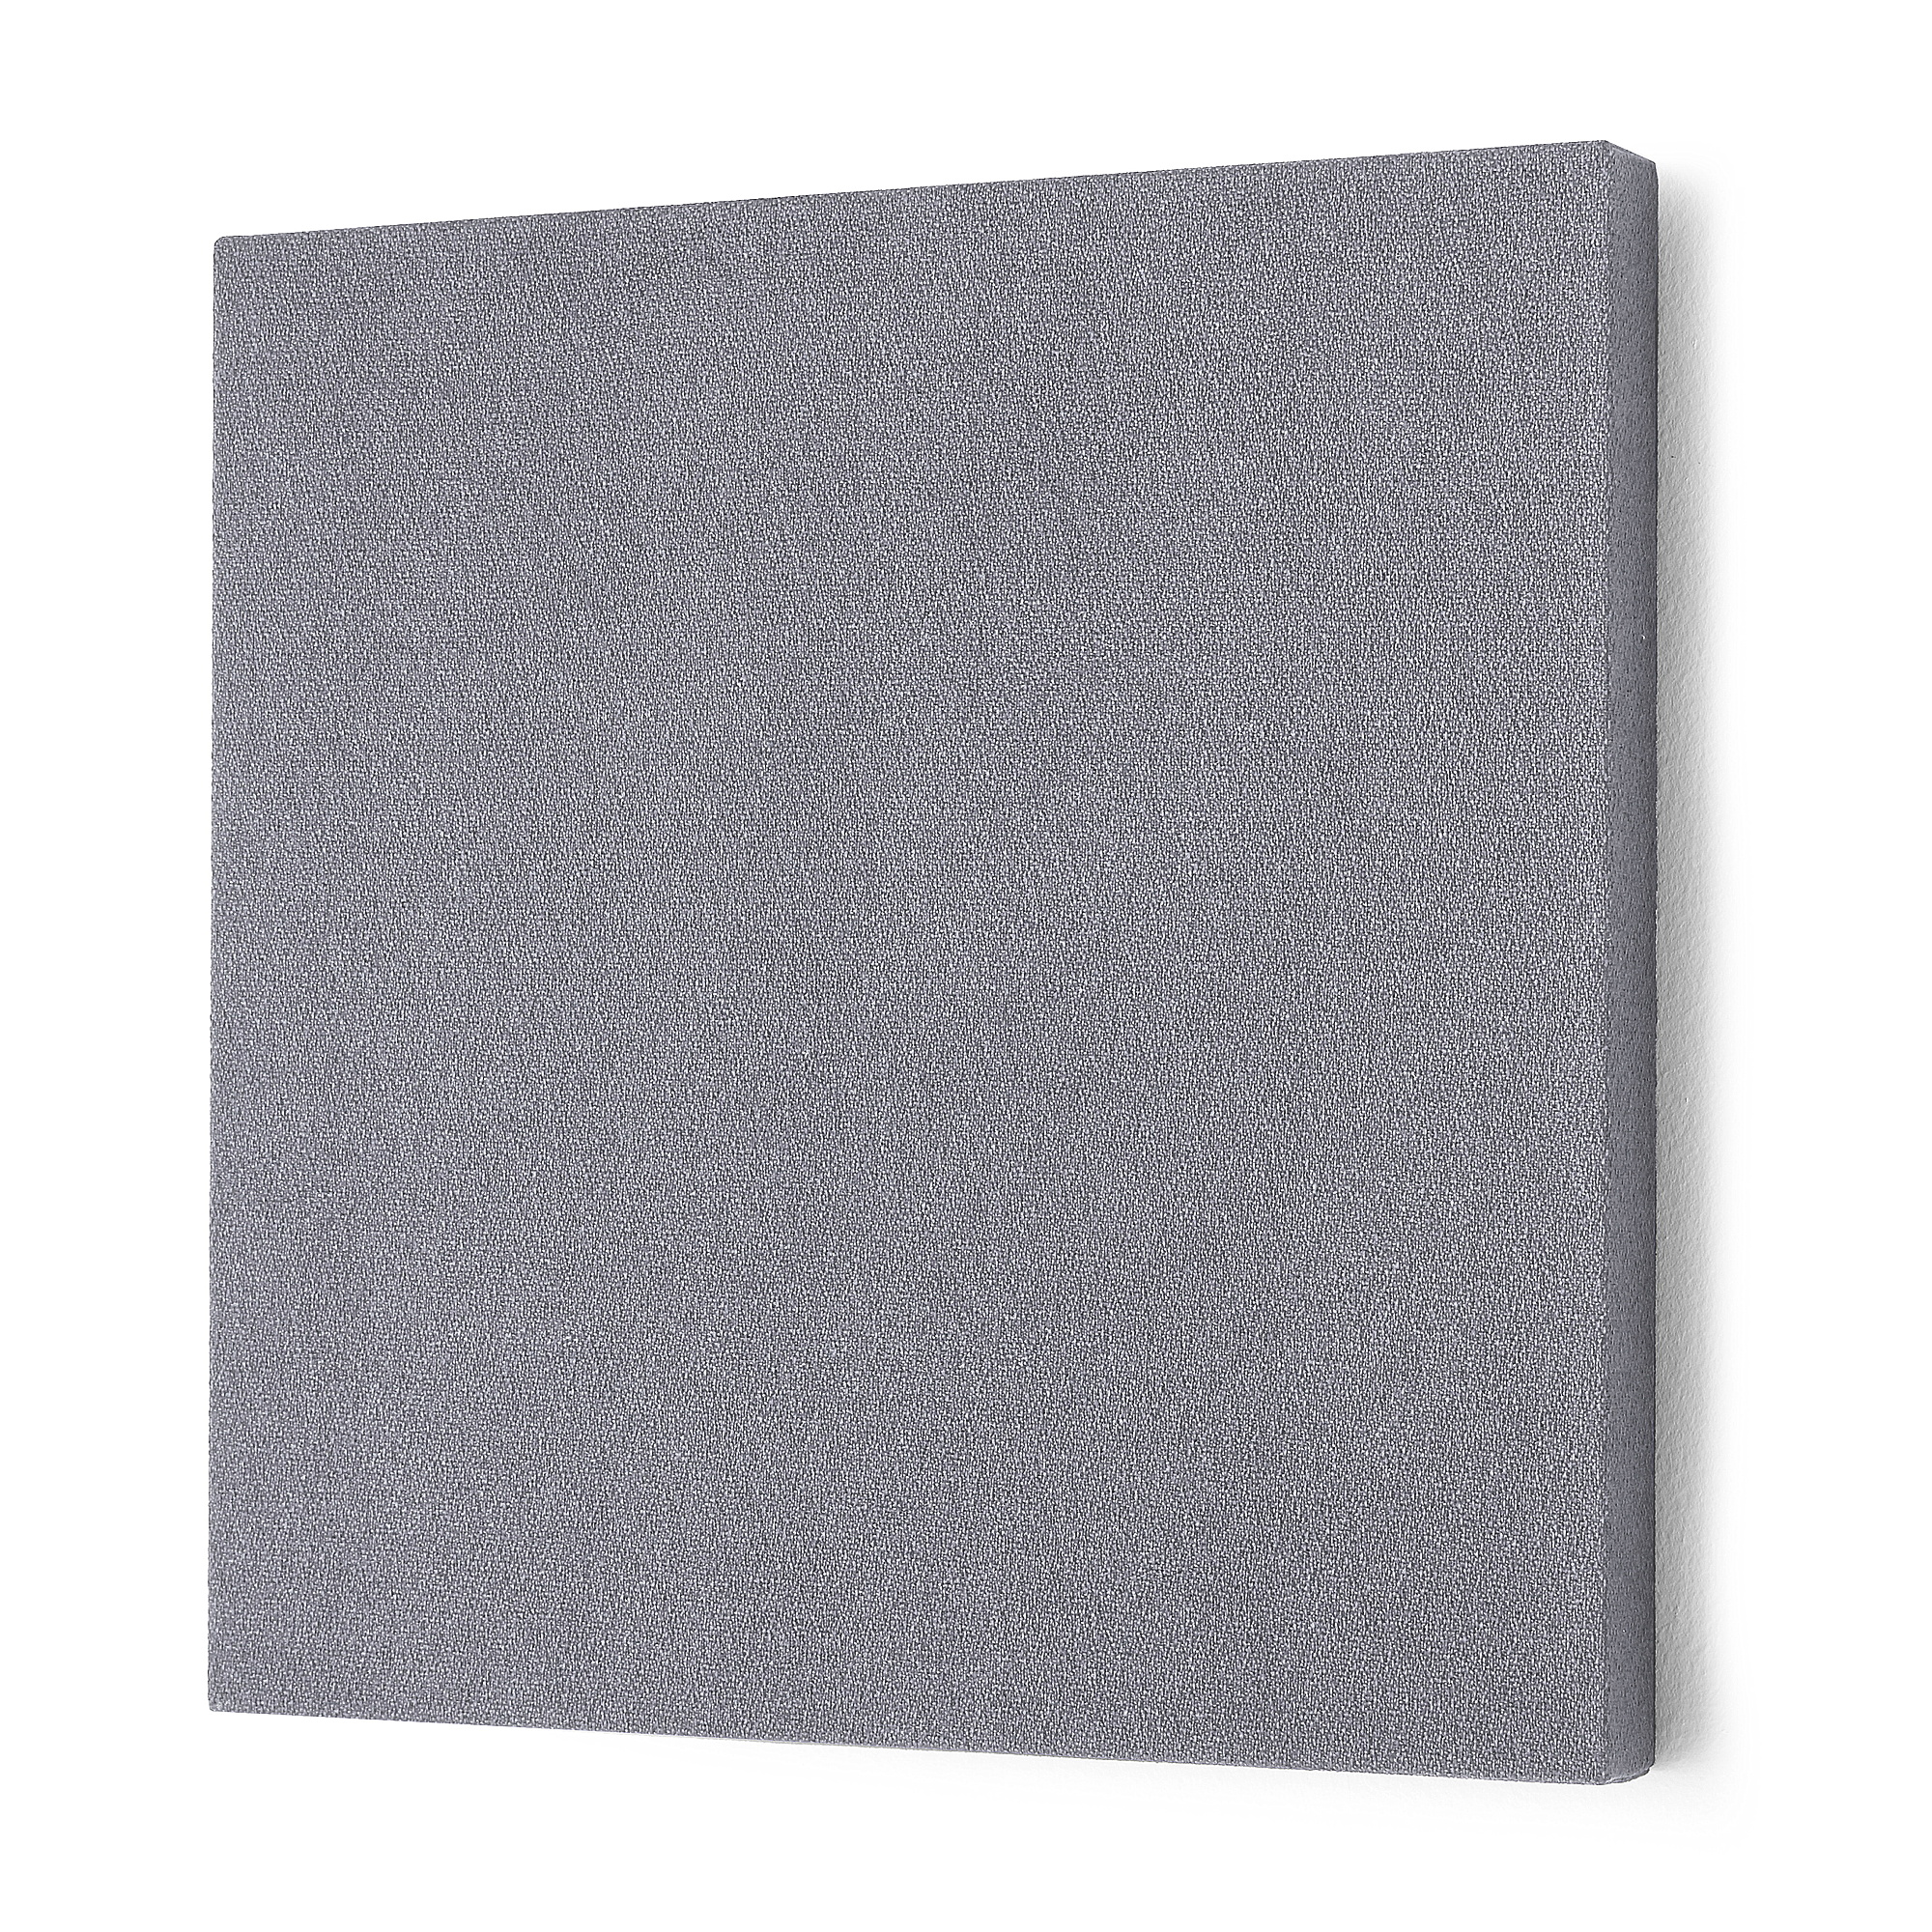 Akustický panel POLY, čtverec, 600x600x56 mm, světle šedý